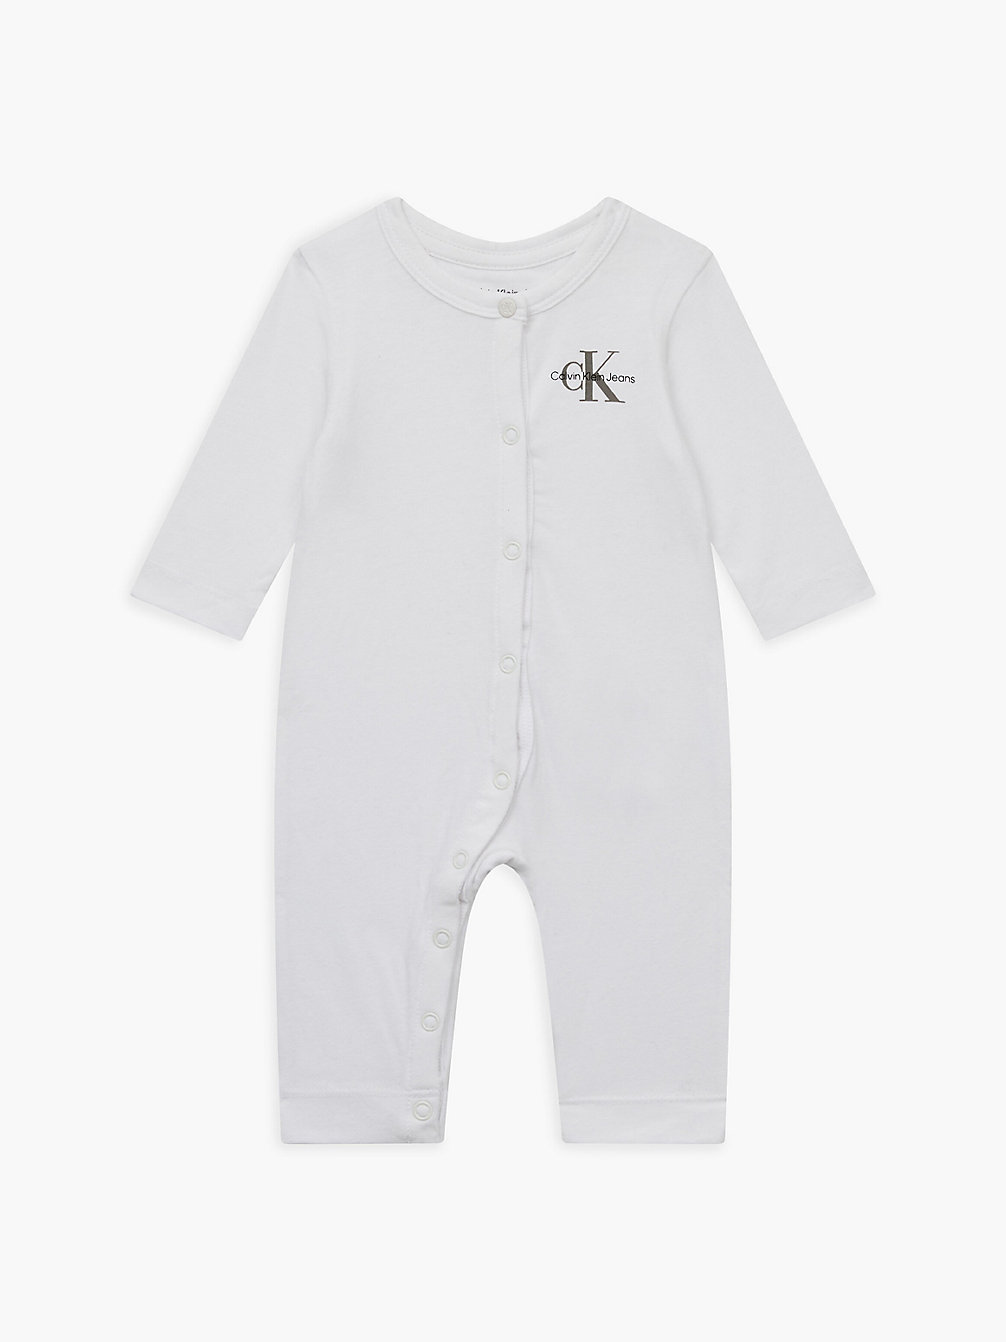 BRIGHT WHITE > Ползунки для новорожденных > undefined newborn - Calvin Klein